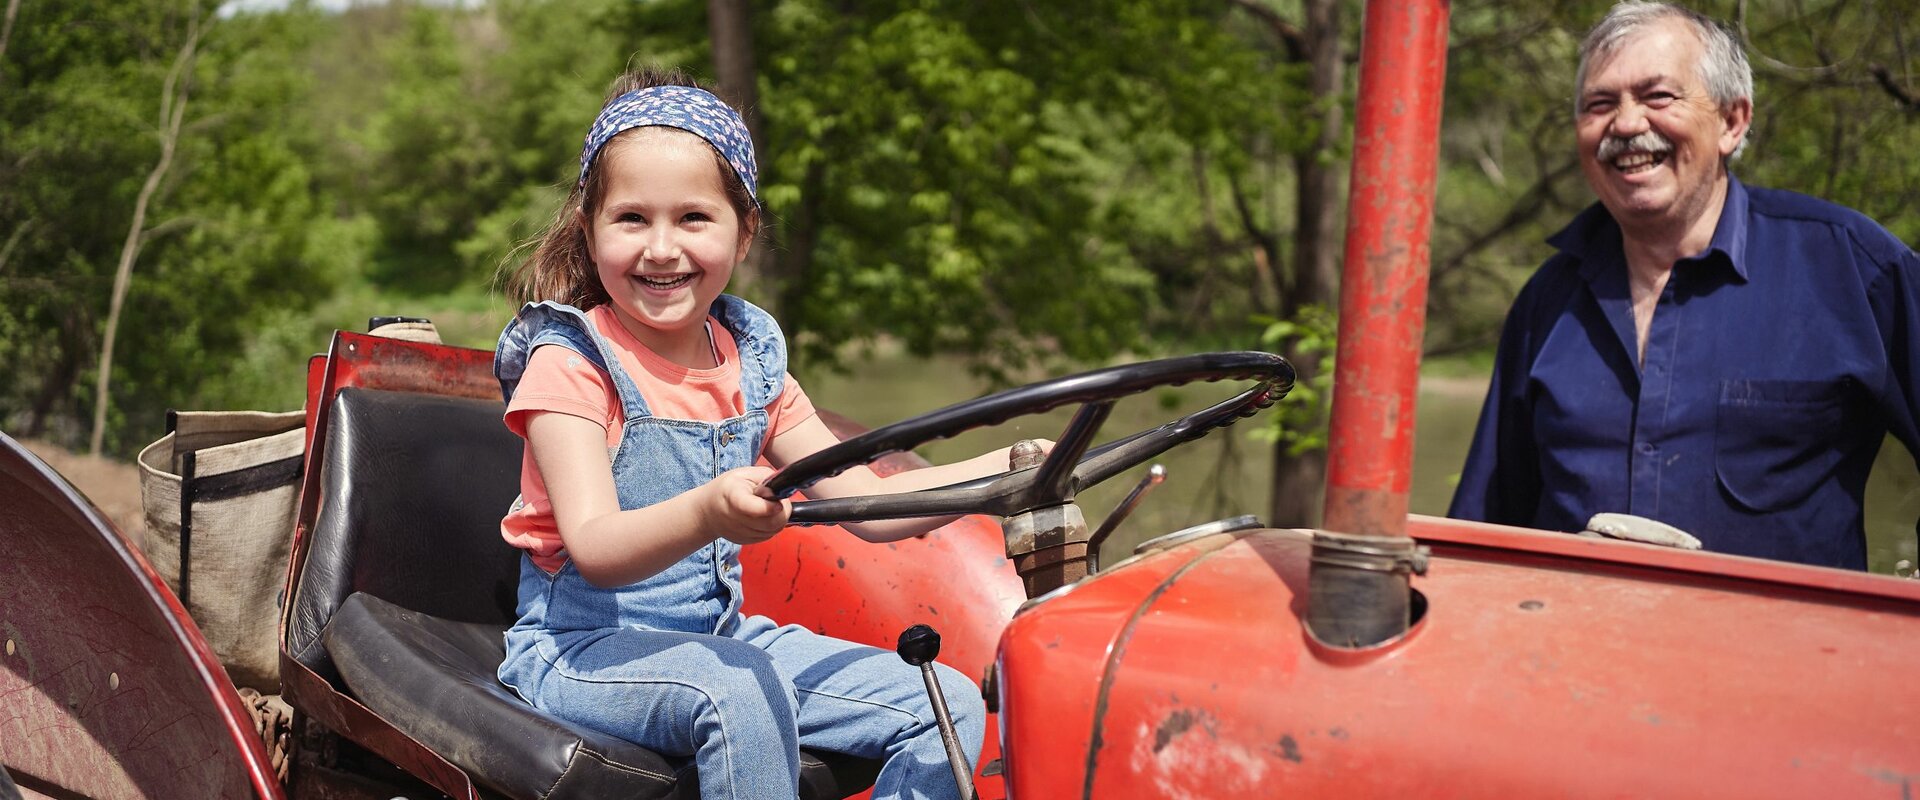 Ein kleines Mädchen sitzt lachend auf dem Sitz eines älteren roten Traktors. Hinter dem Traktor steht ein lachender älterer, grauhaariger Mann.